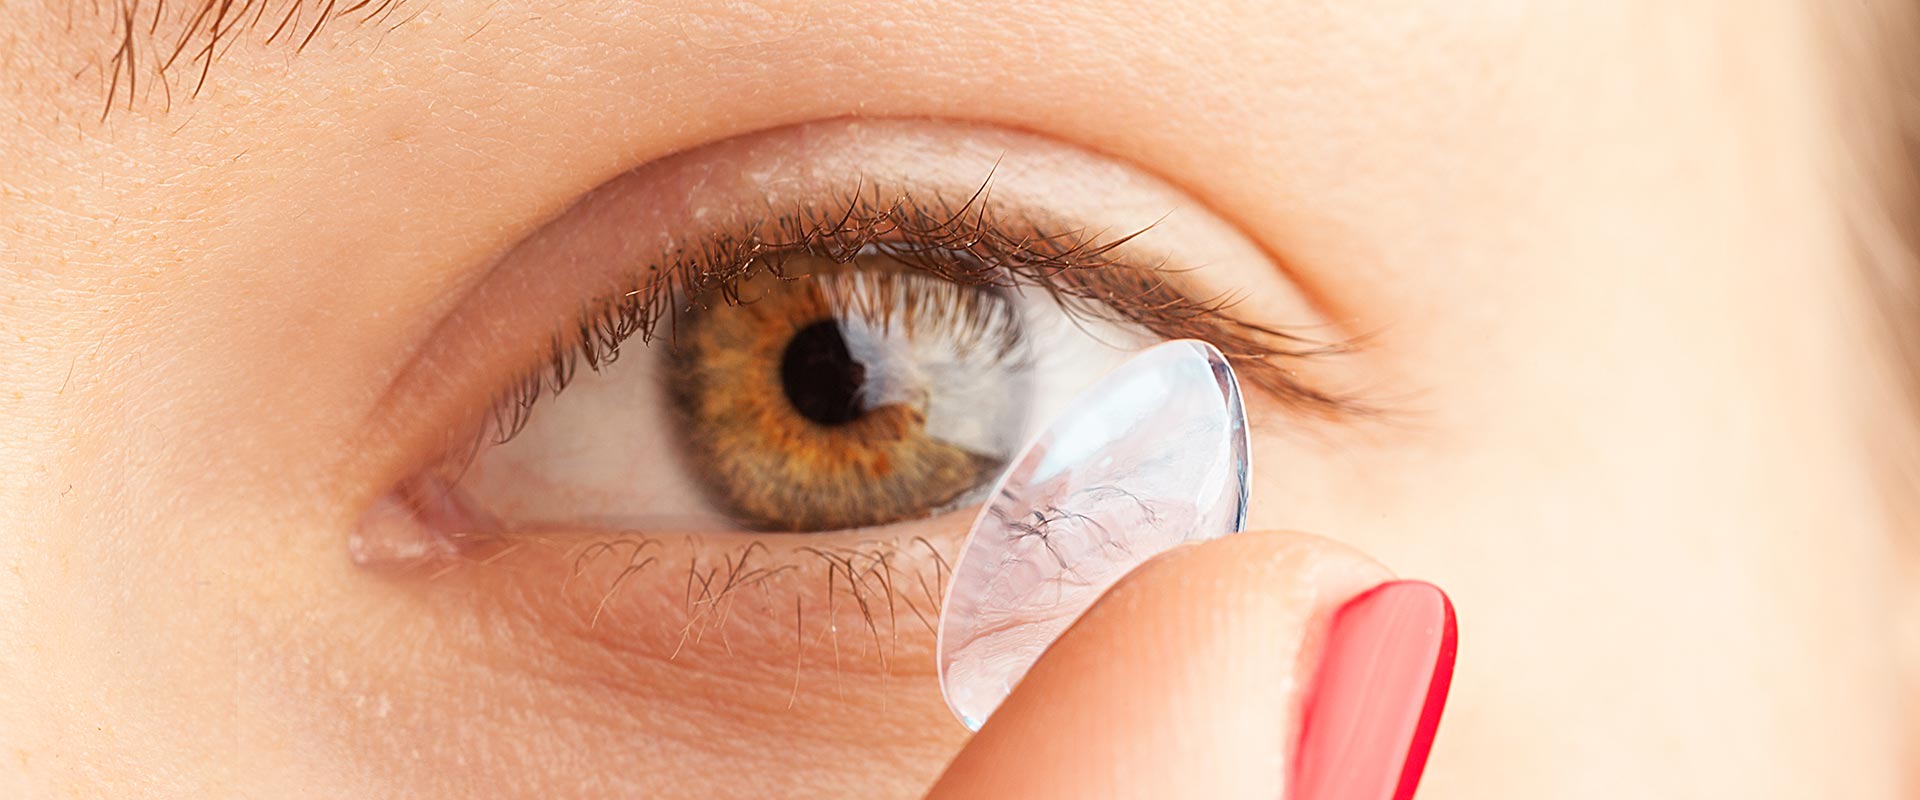 Cuánto tiempo se debe usar lentes de contacto?